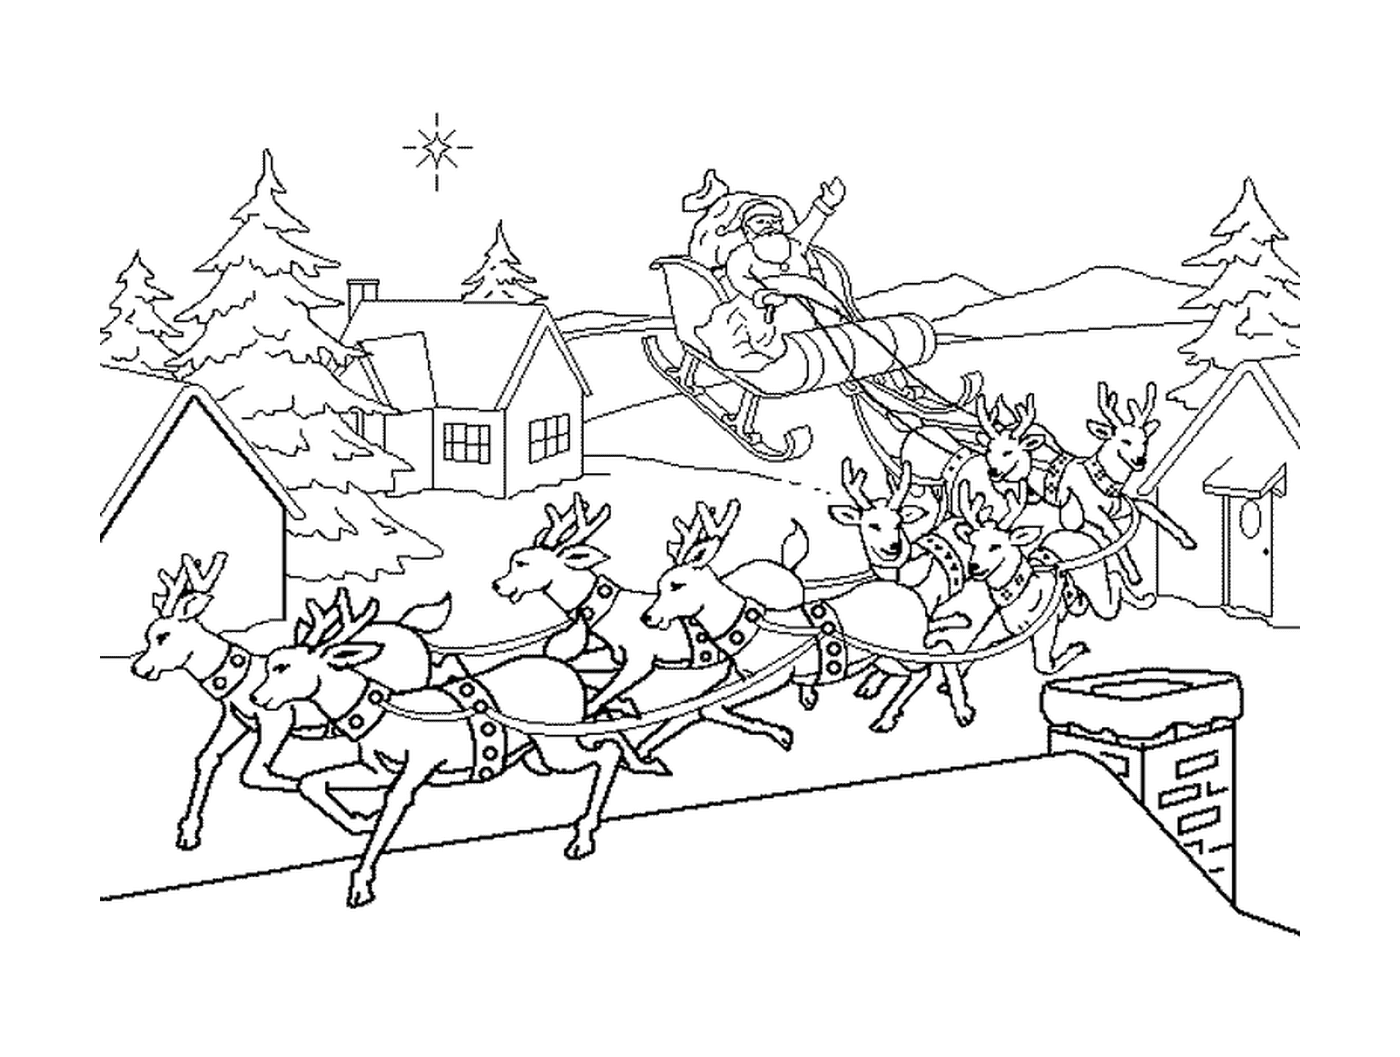  La slitta di Babbo Natale in un villaggio 